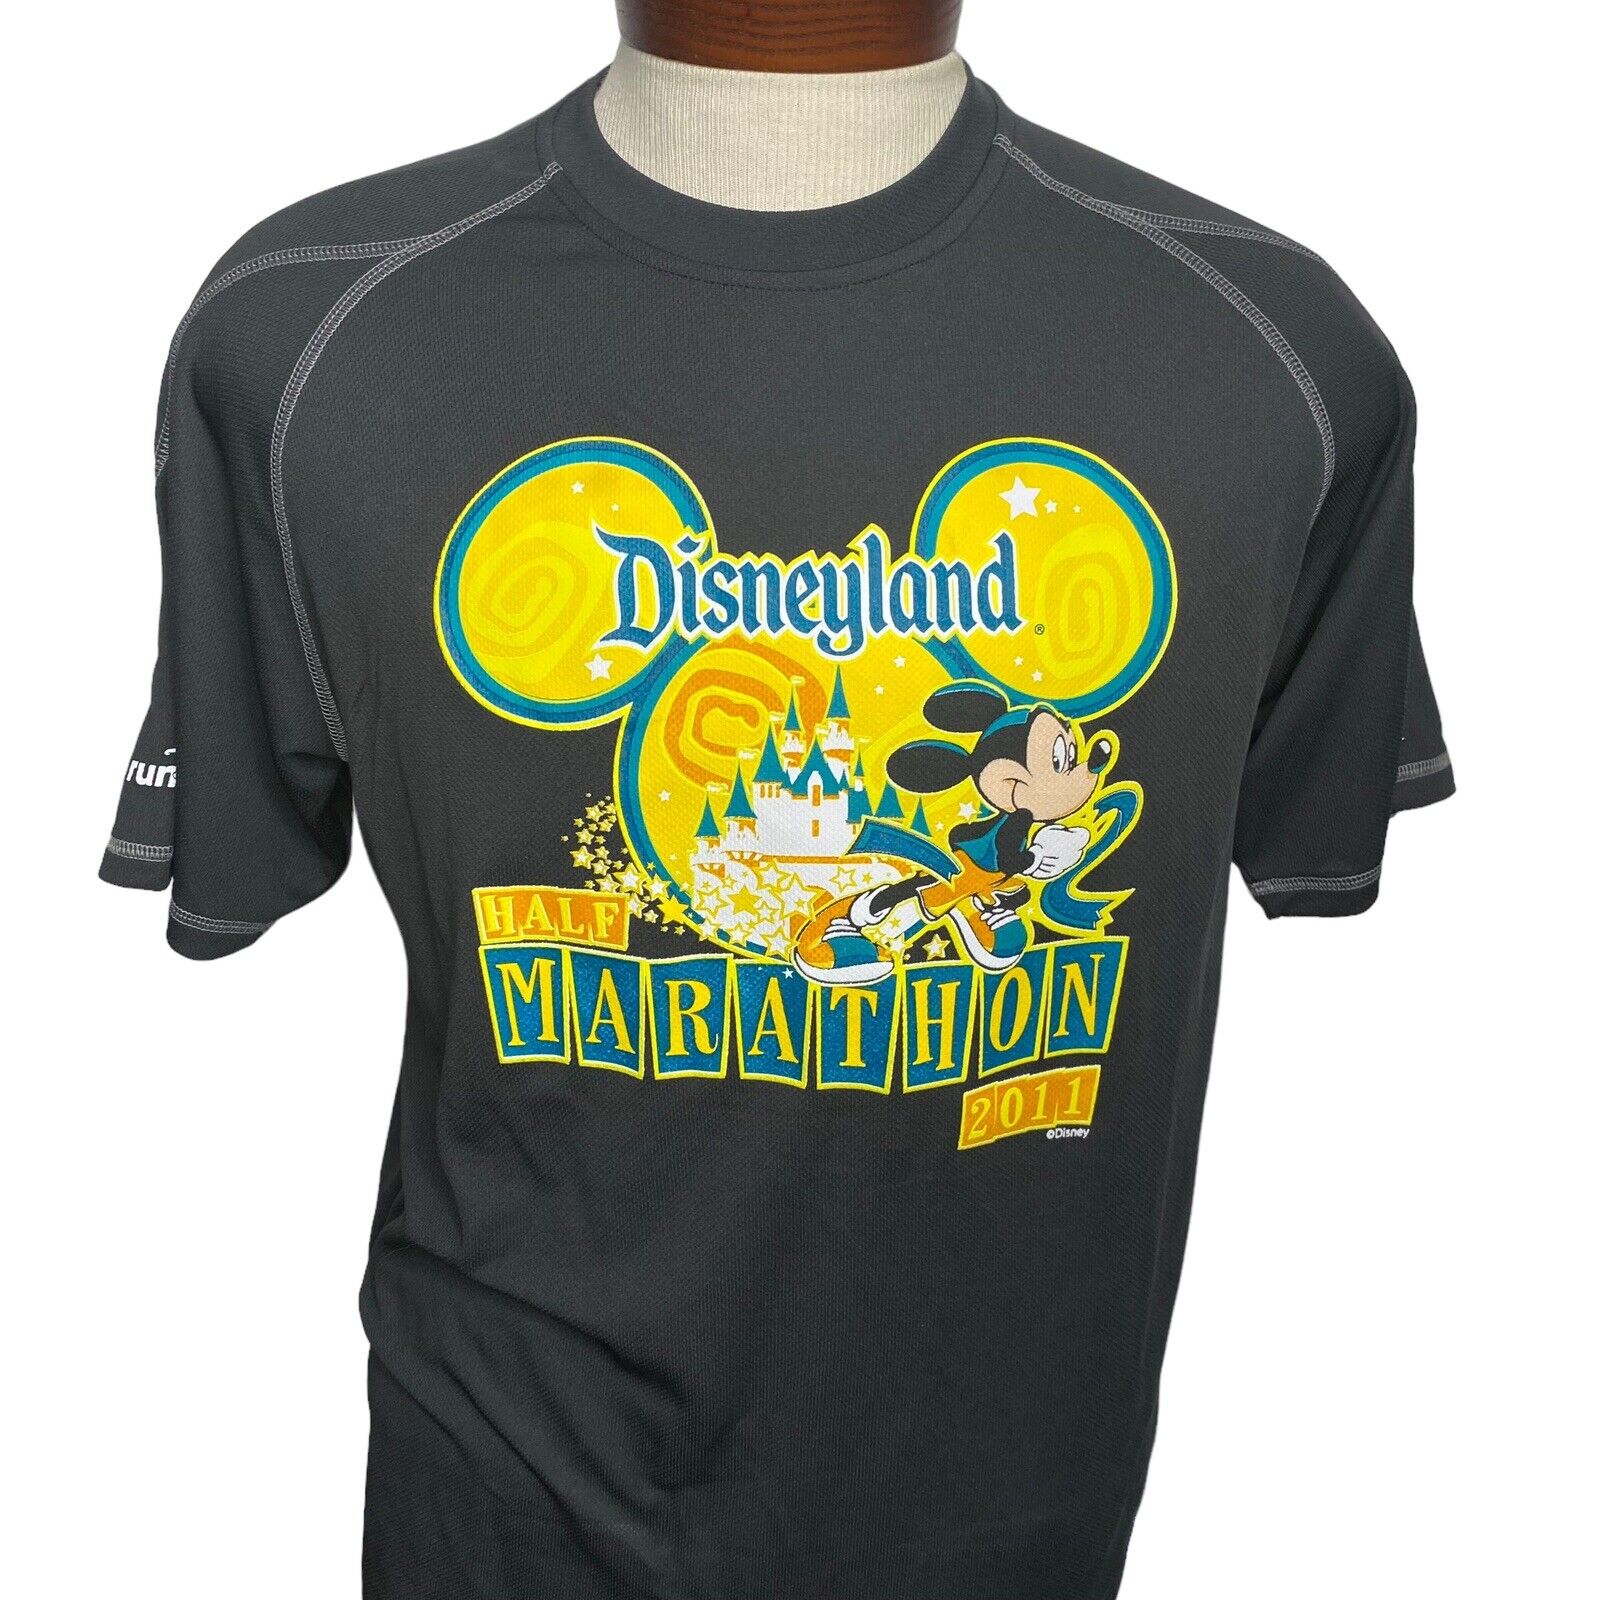 Disney Champion Running Shirt Men\'s Size Medium 2011 Disneyland 1/2 Marathon